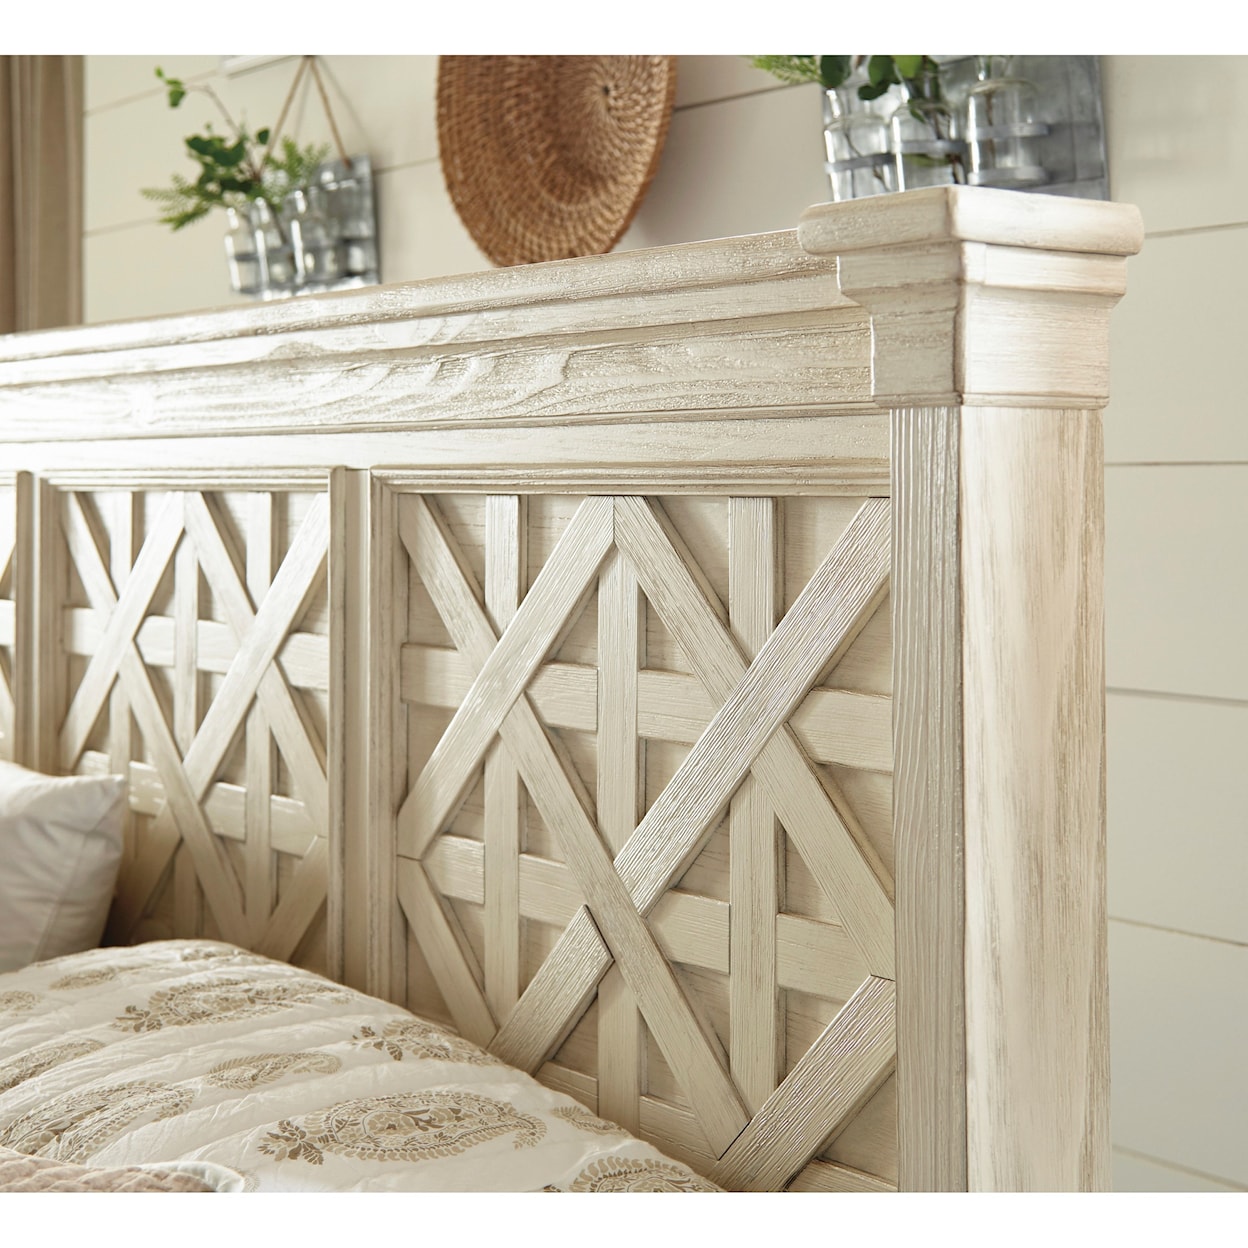 Ashley Furniture Signature Design Bolanburg Queen Panel Bed